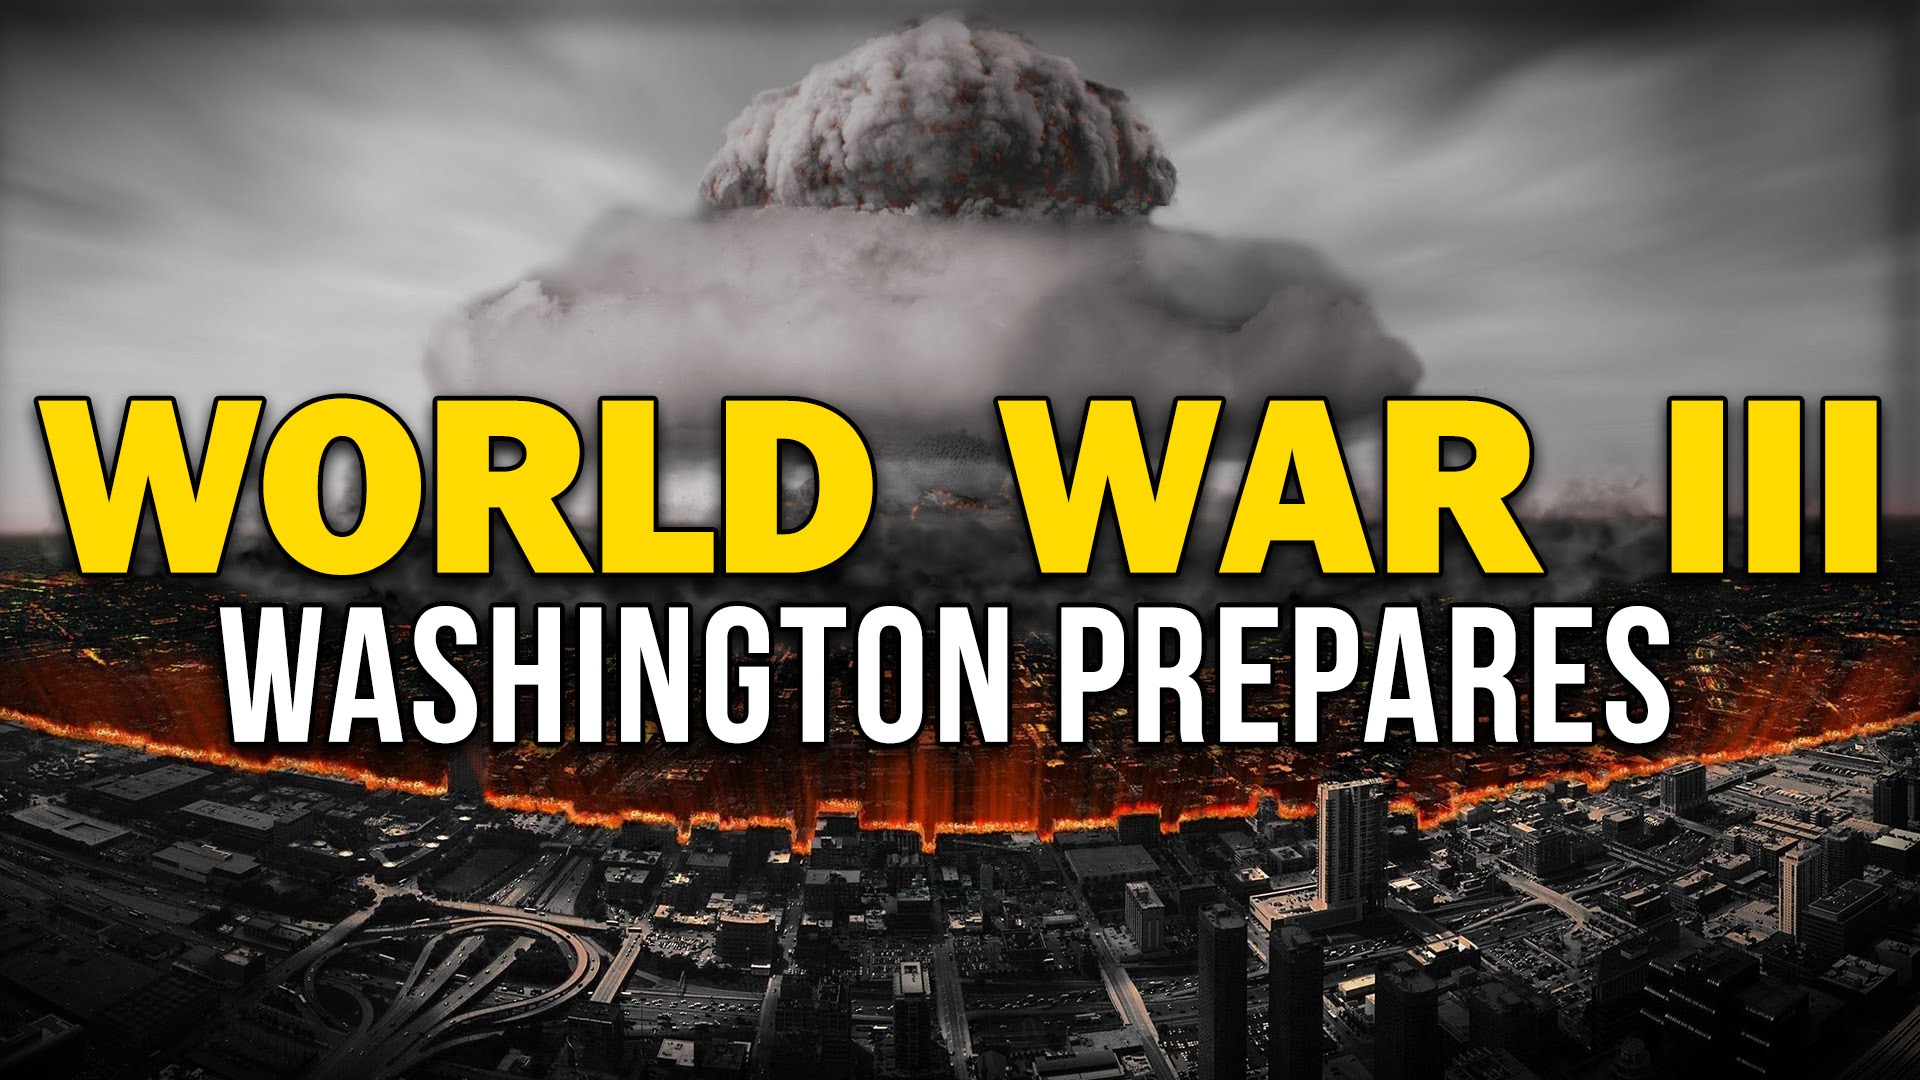 WORLD WAR III: WASHINGTON PREPARES